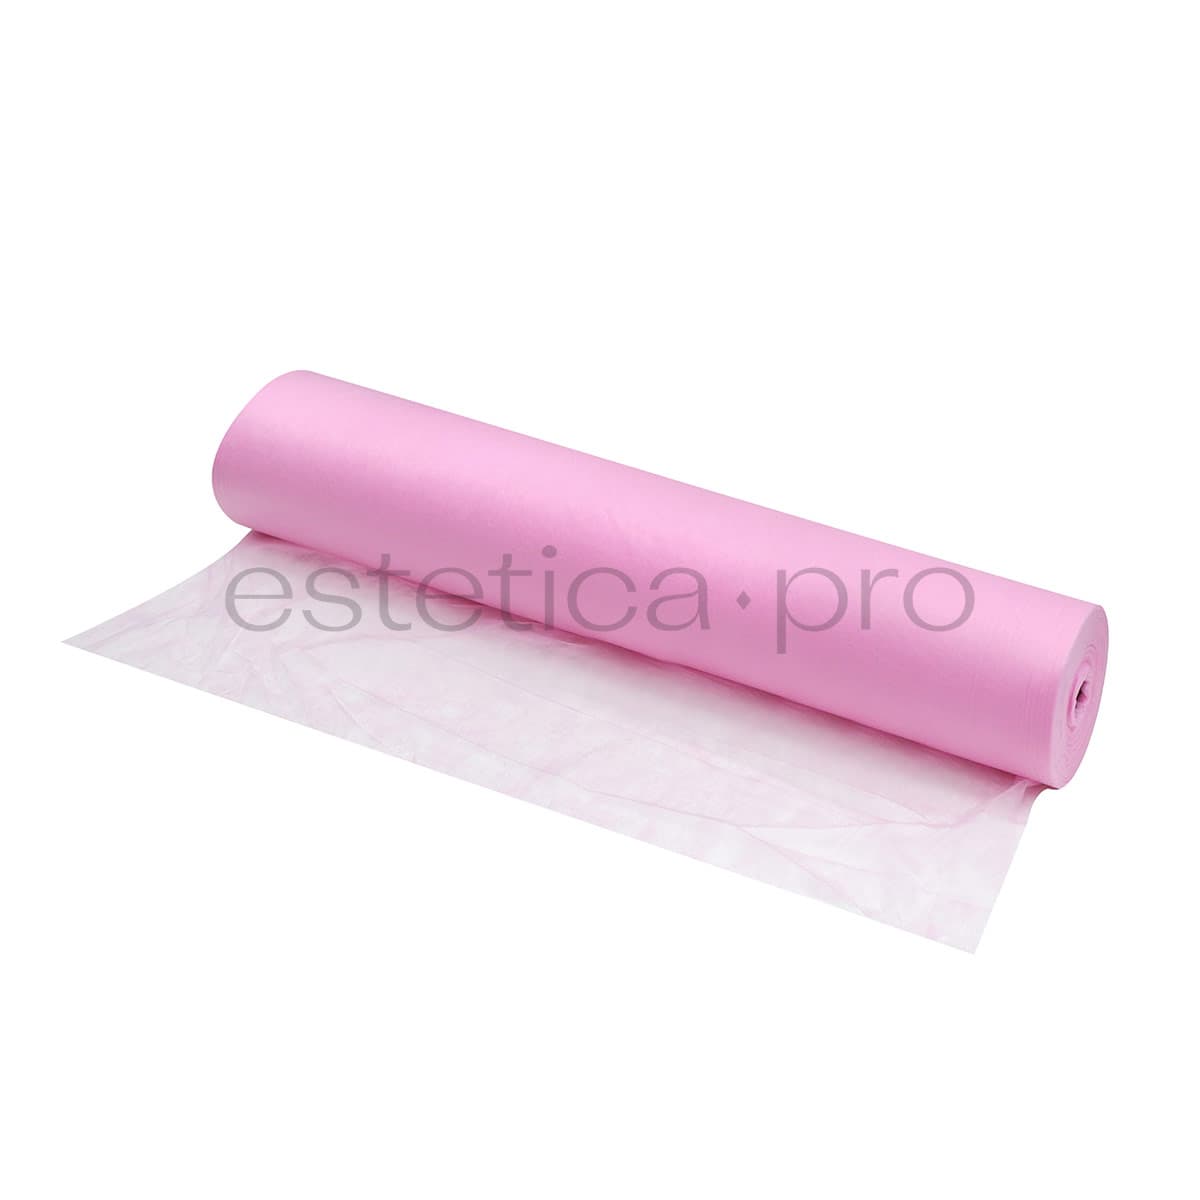 Простынь одноразовая 70*200,SMS 17 гр/м,100 шт (рулон), цвет розовый